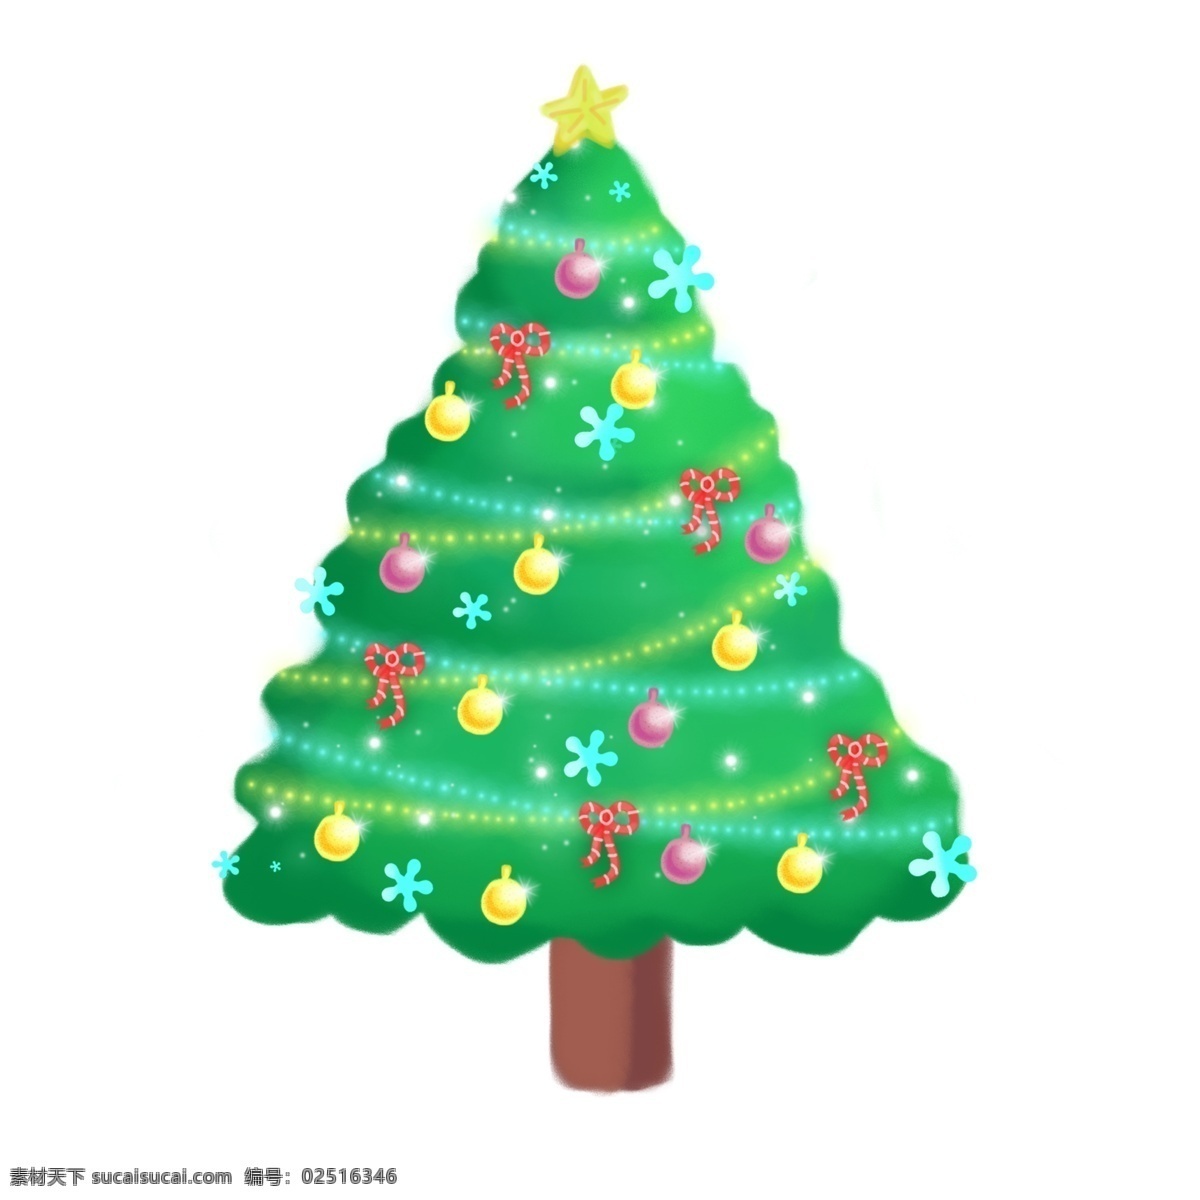 圣诞节 手绘 插画 圣诞树 彩球 灯带 冬天 可爱 雪花 树